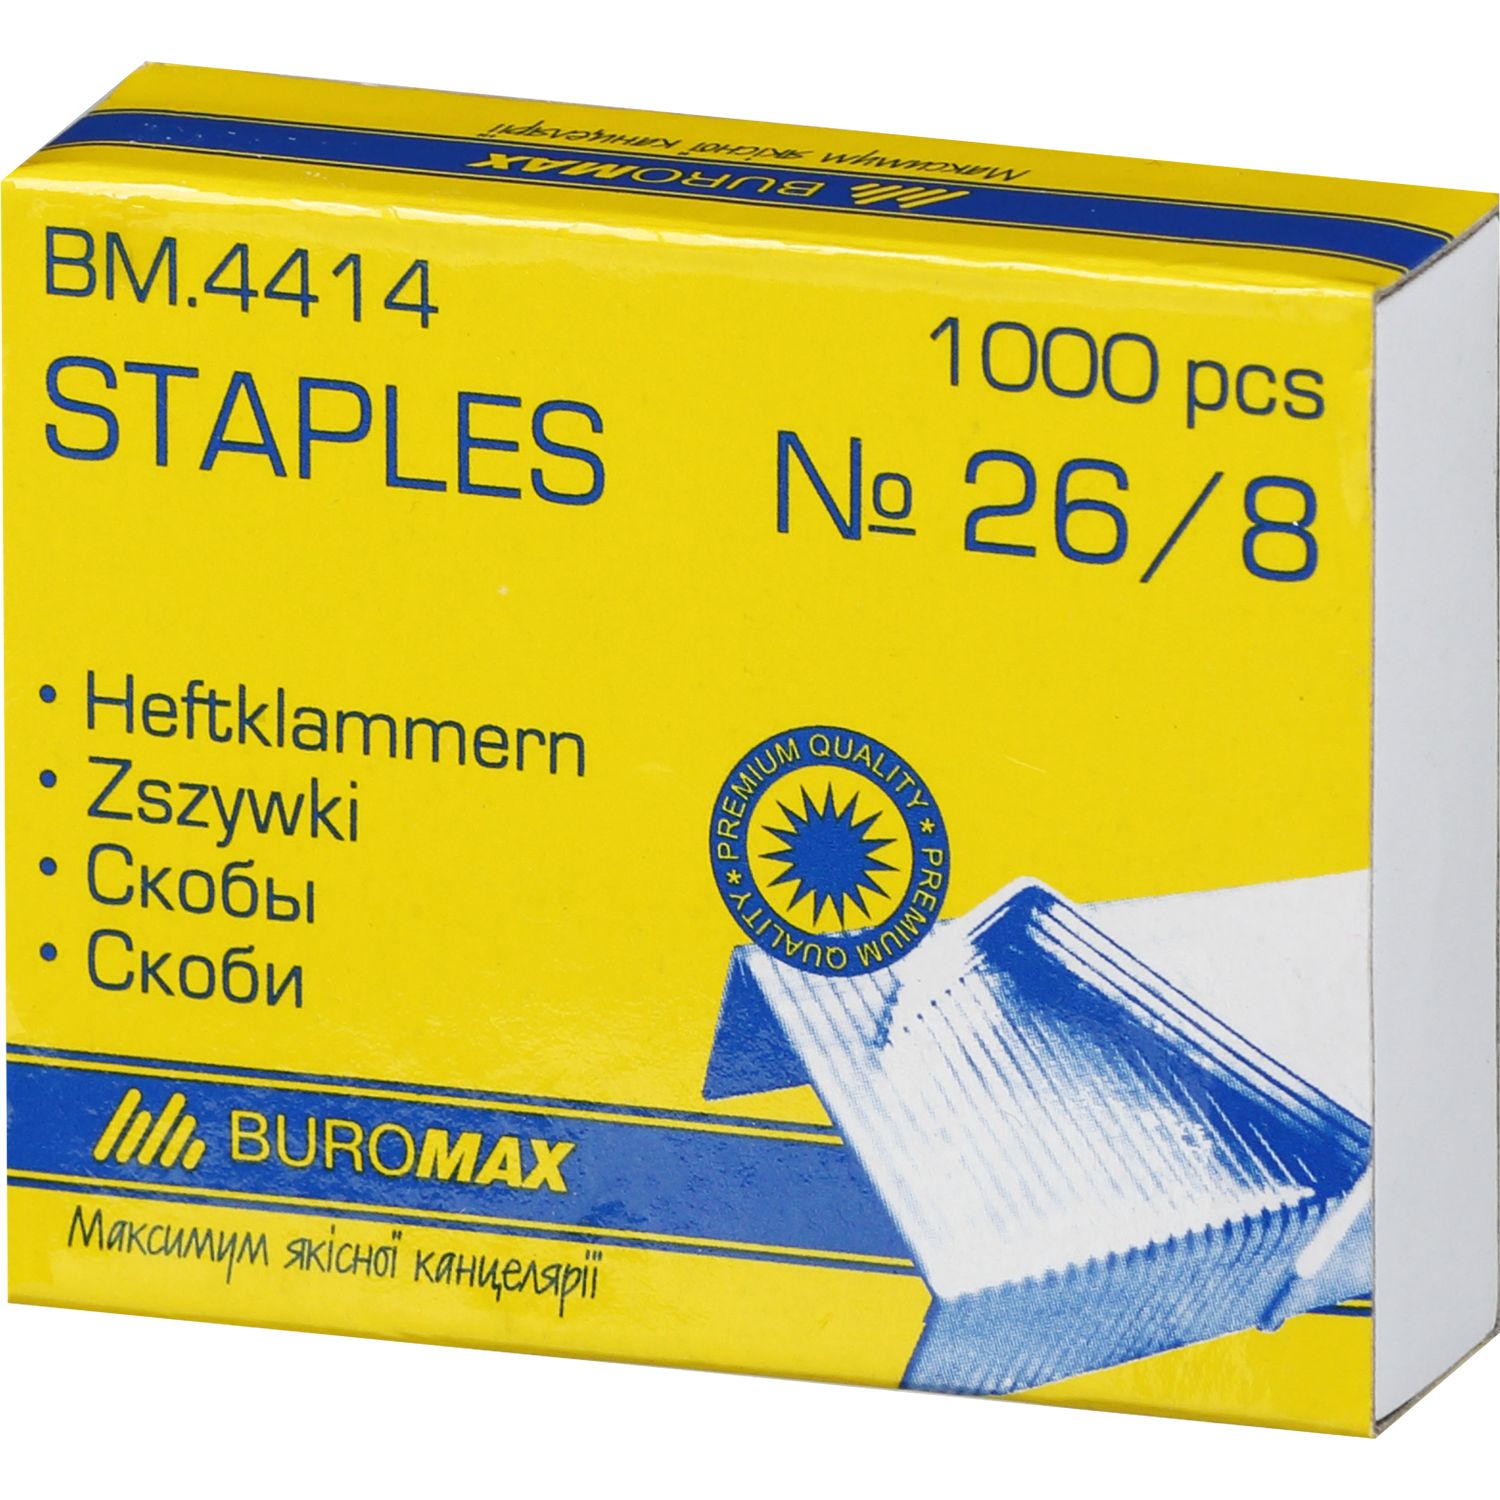 Скобы для степлеров Buromax Люкс №26/8 1000 шт. (BM.4414) - фото 1